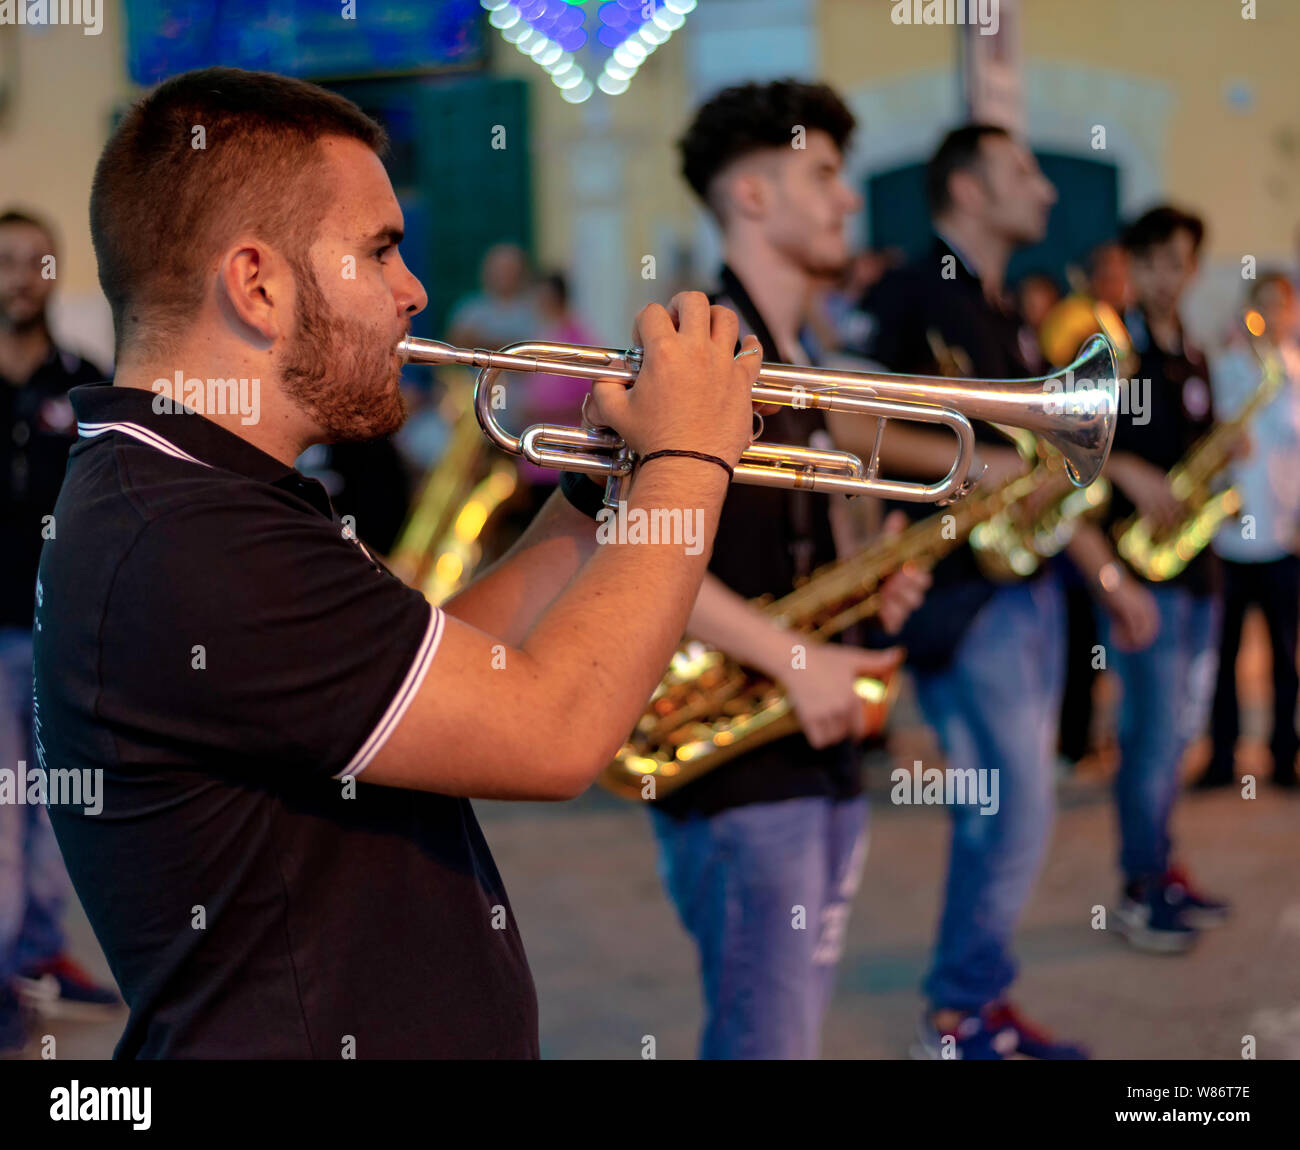 Modugno, Italia - 22 de septiembre de 2018: La plaza principal con luces montadas para la fiesta de la patrona. Destaca un músico tocando una trompeta Foto de stock